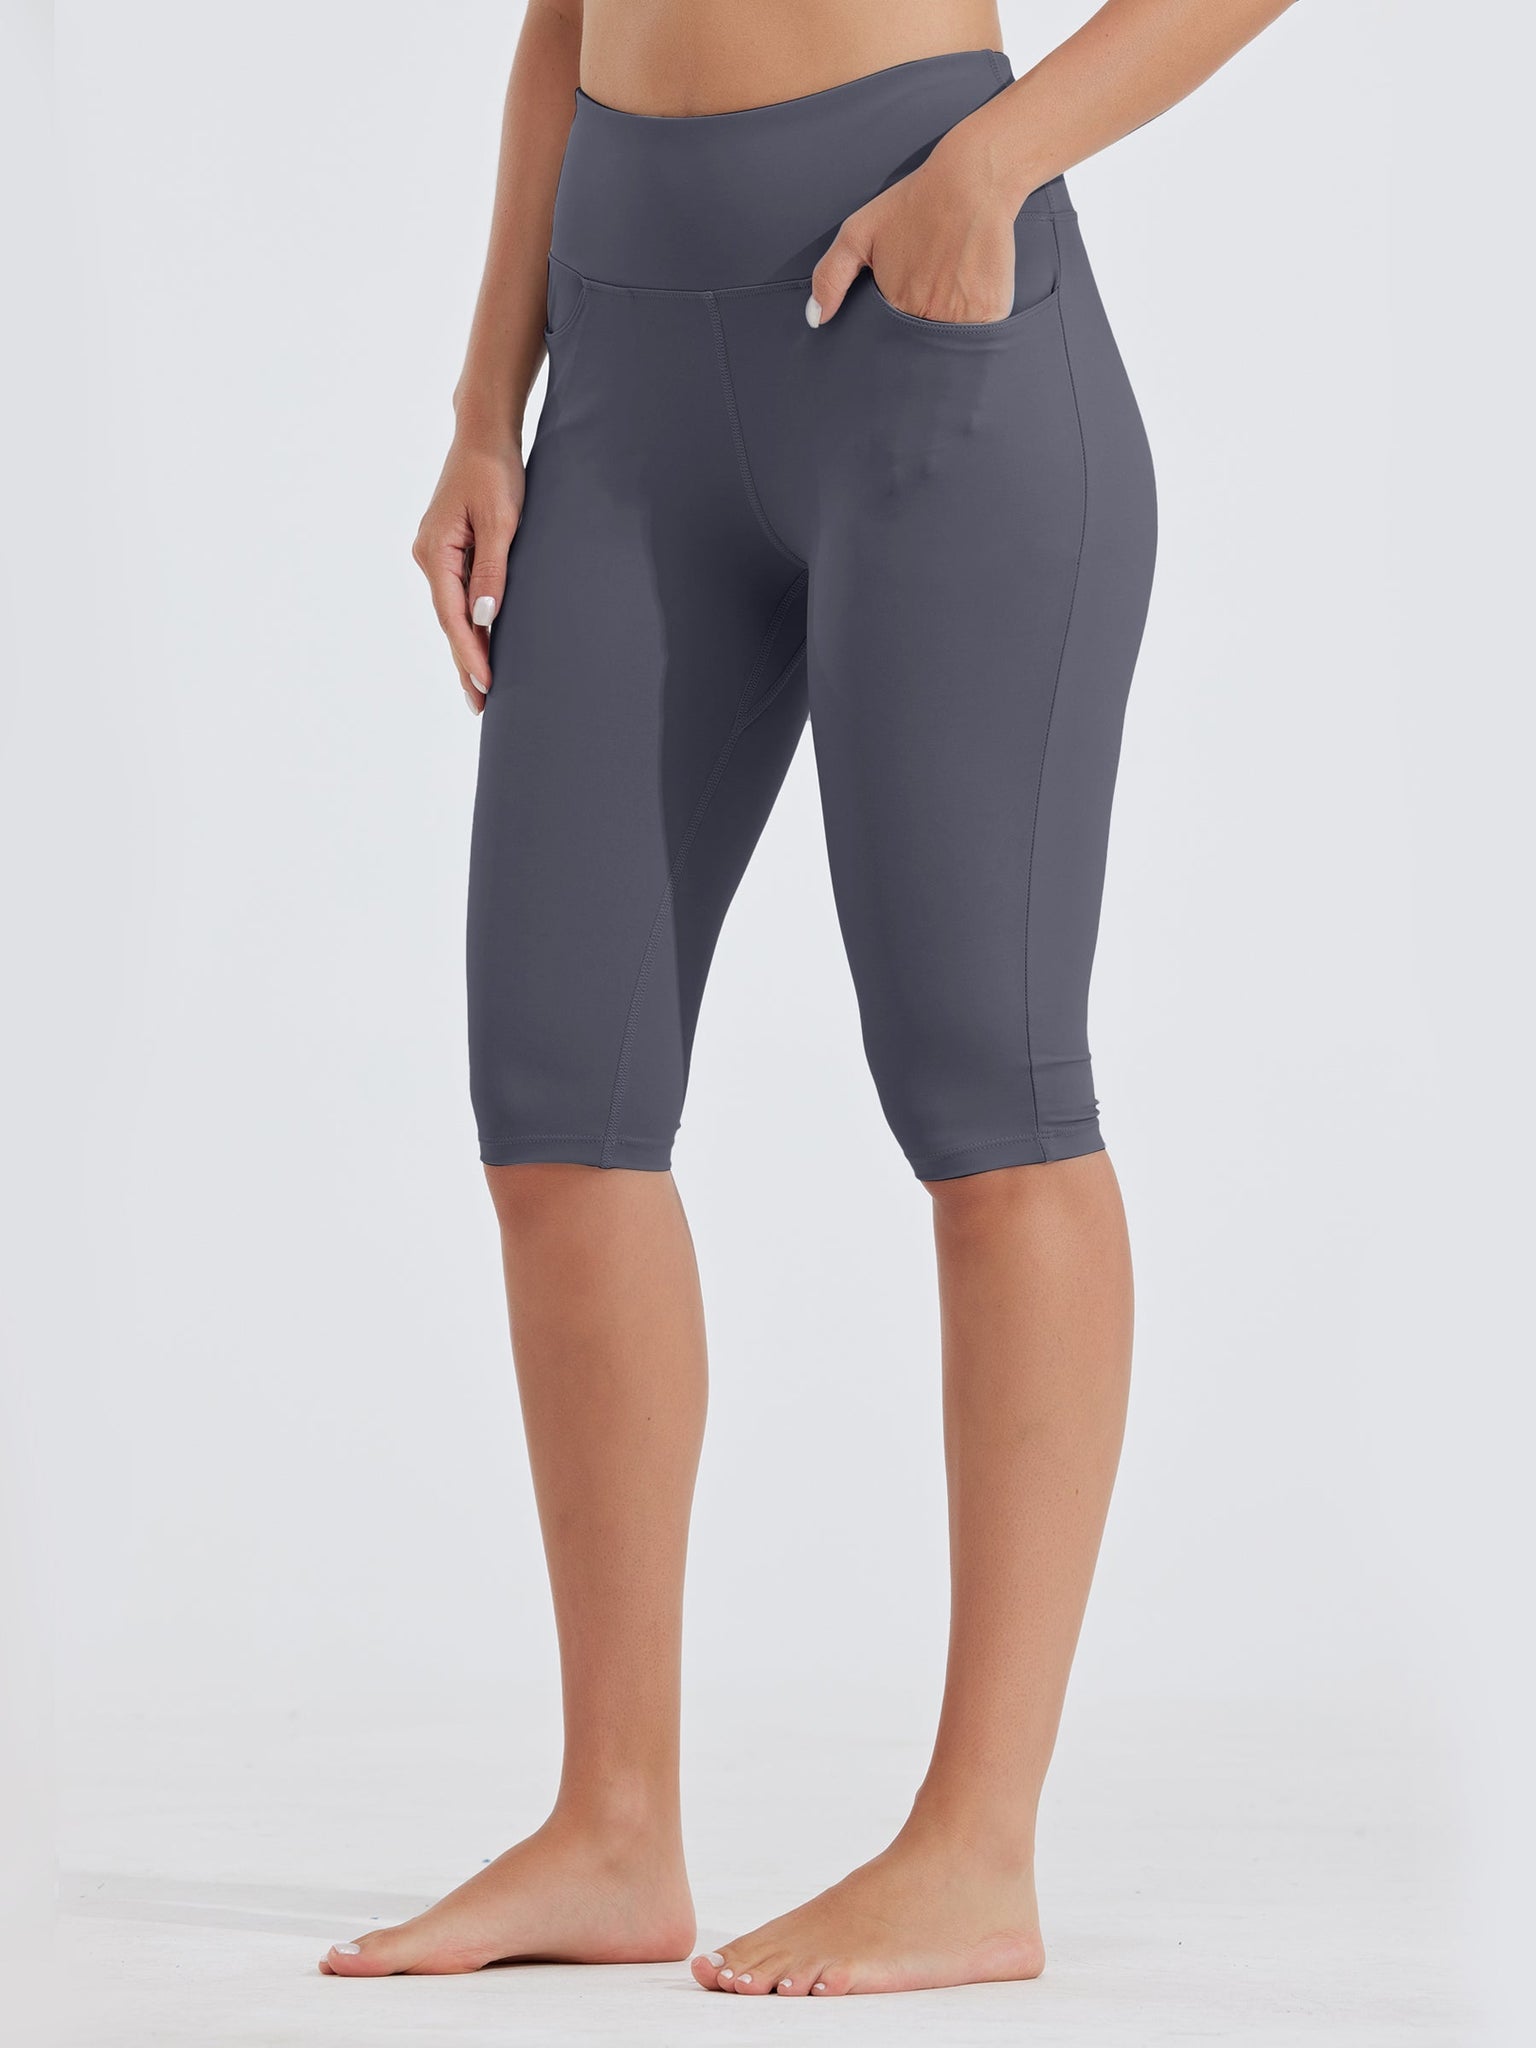 Women's Capri Leggings Light Grey – letsgetintophysical